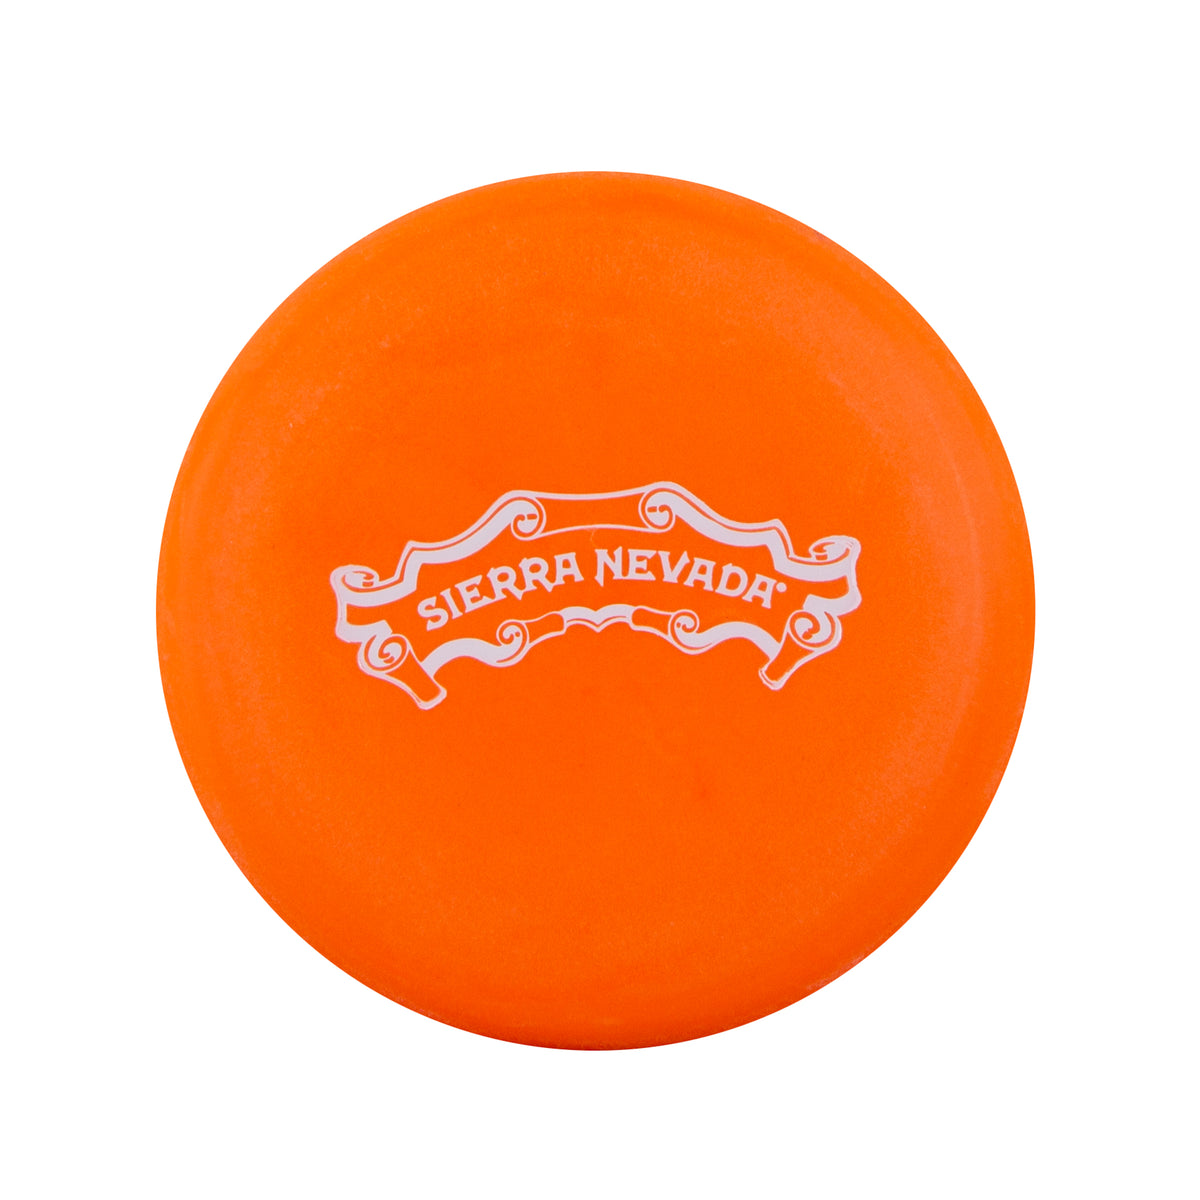 Sierra Nevada disc golf marker - orange